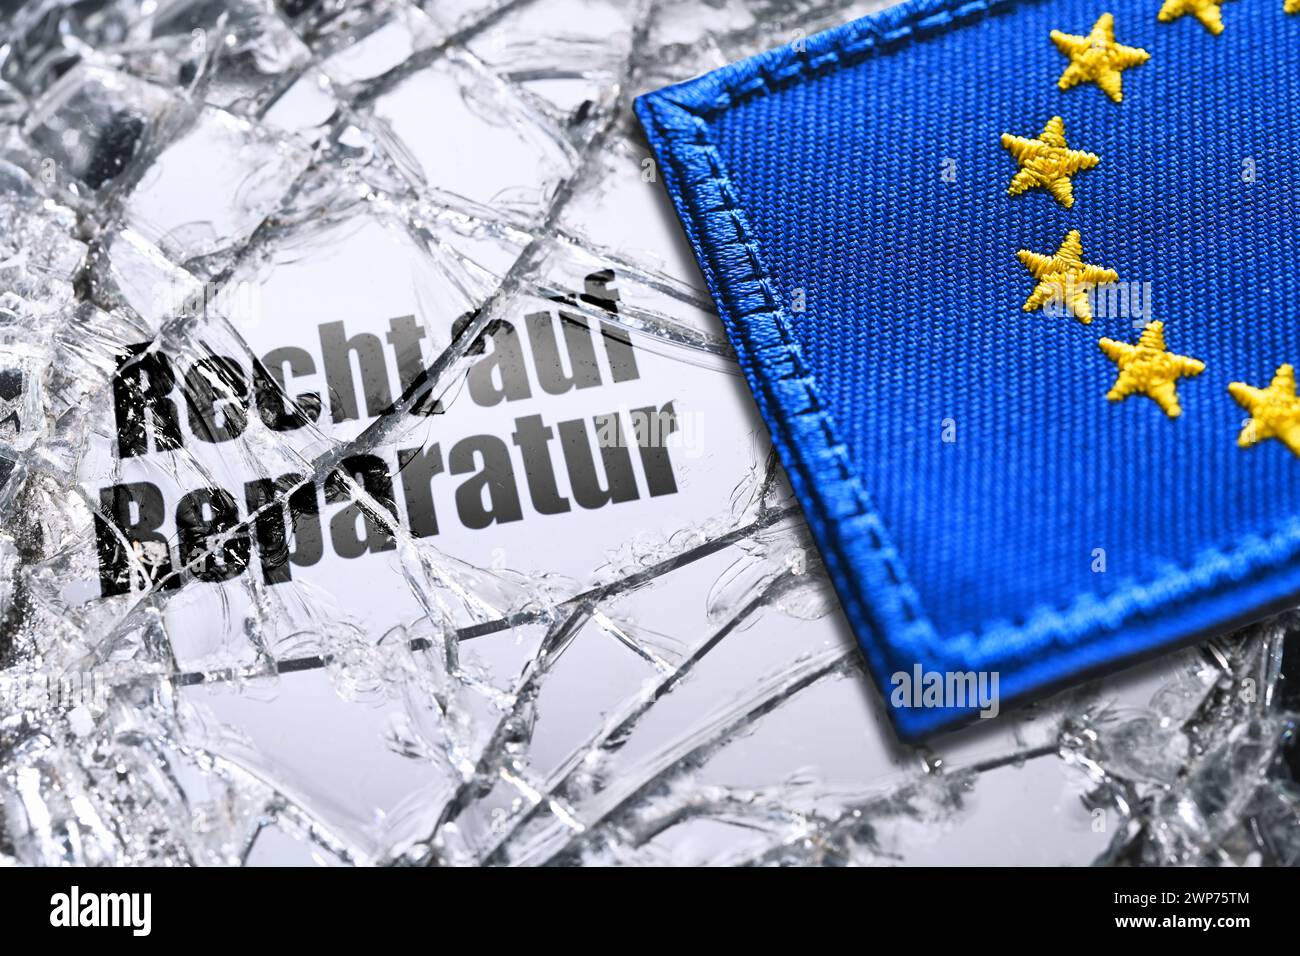 FOTOMONTAGE, EU-Fahne auf einem zerbrochenen Spiegel mit Aufschrift Recht auf Reparatur Stock Photo